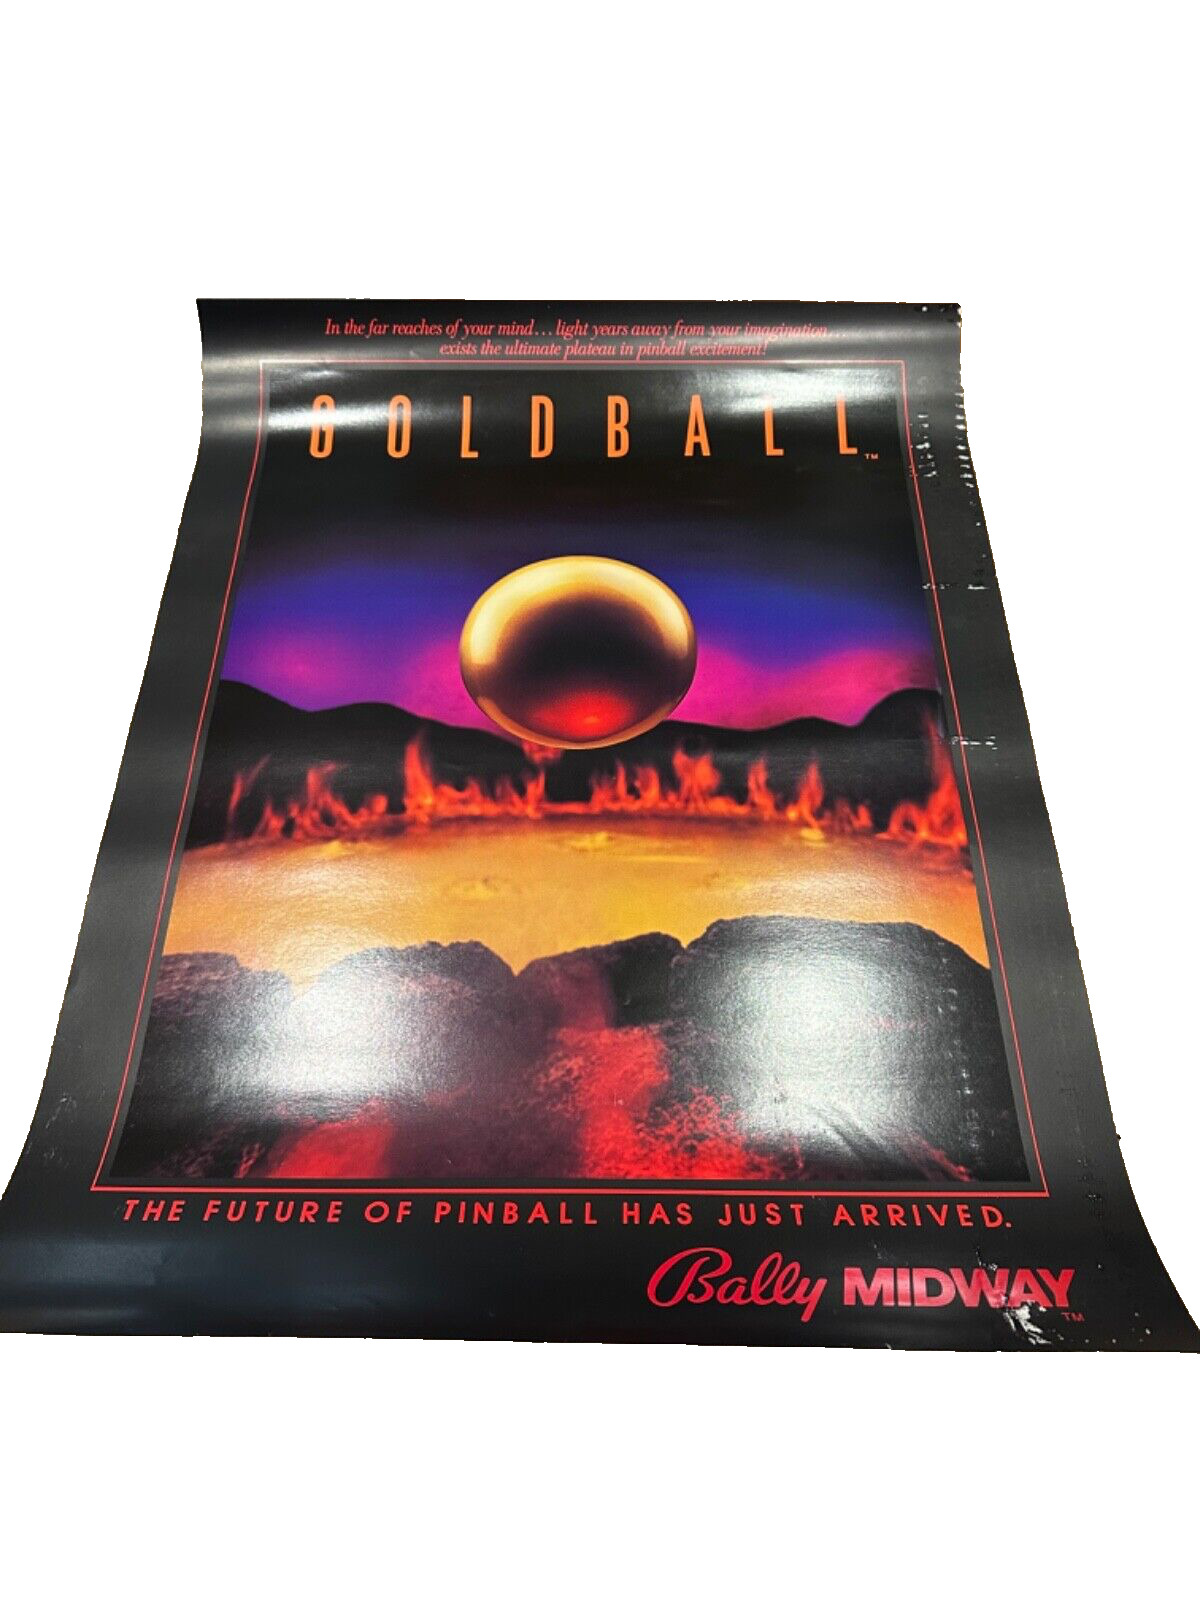 Bally GOLD BALL 1983 Original NOS Pinball Machine Flipper Game 24”X 19” Poster